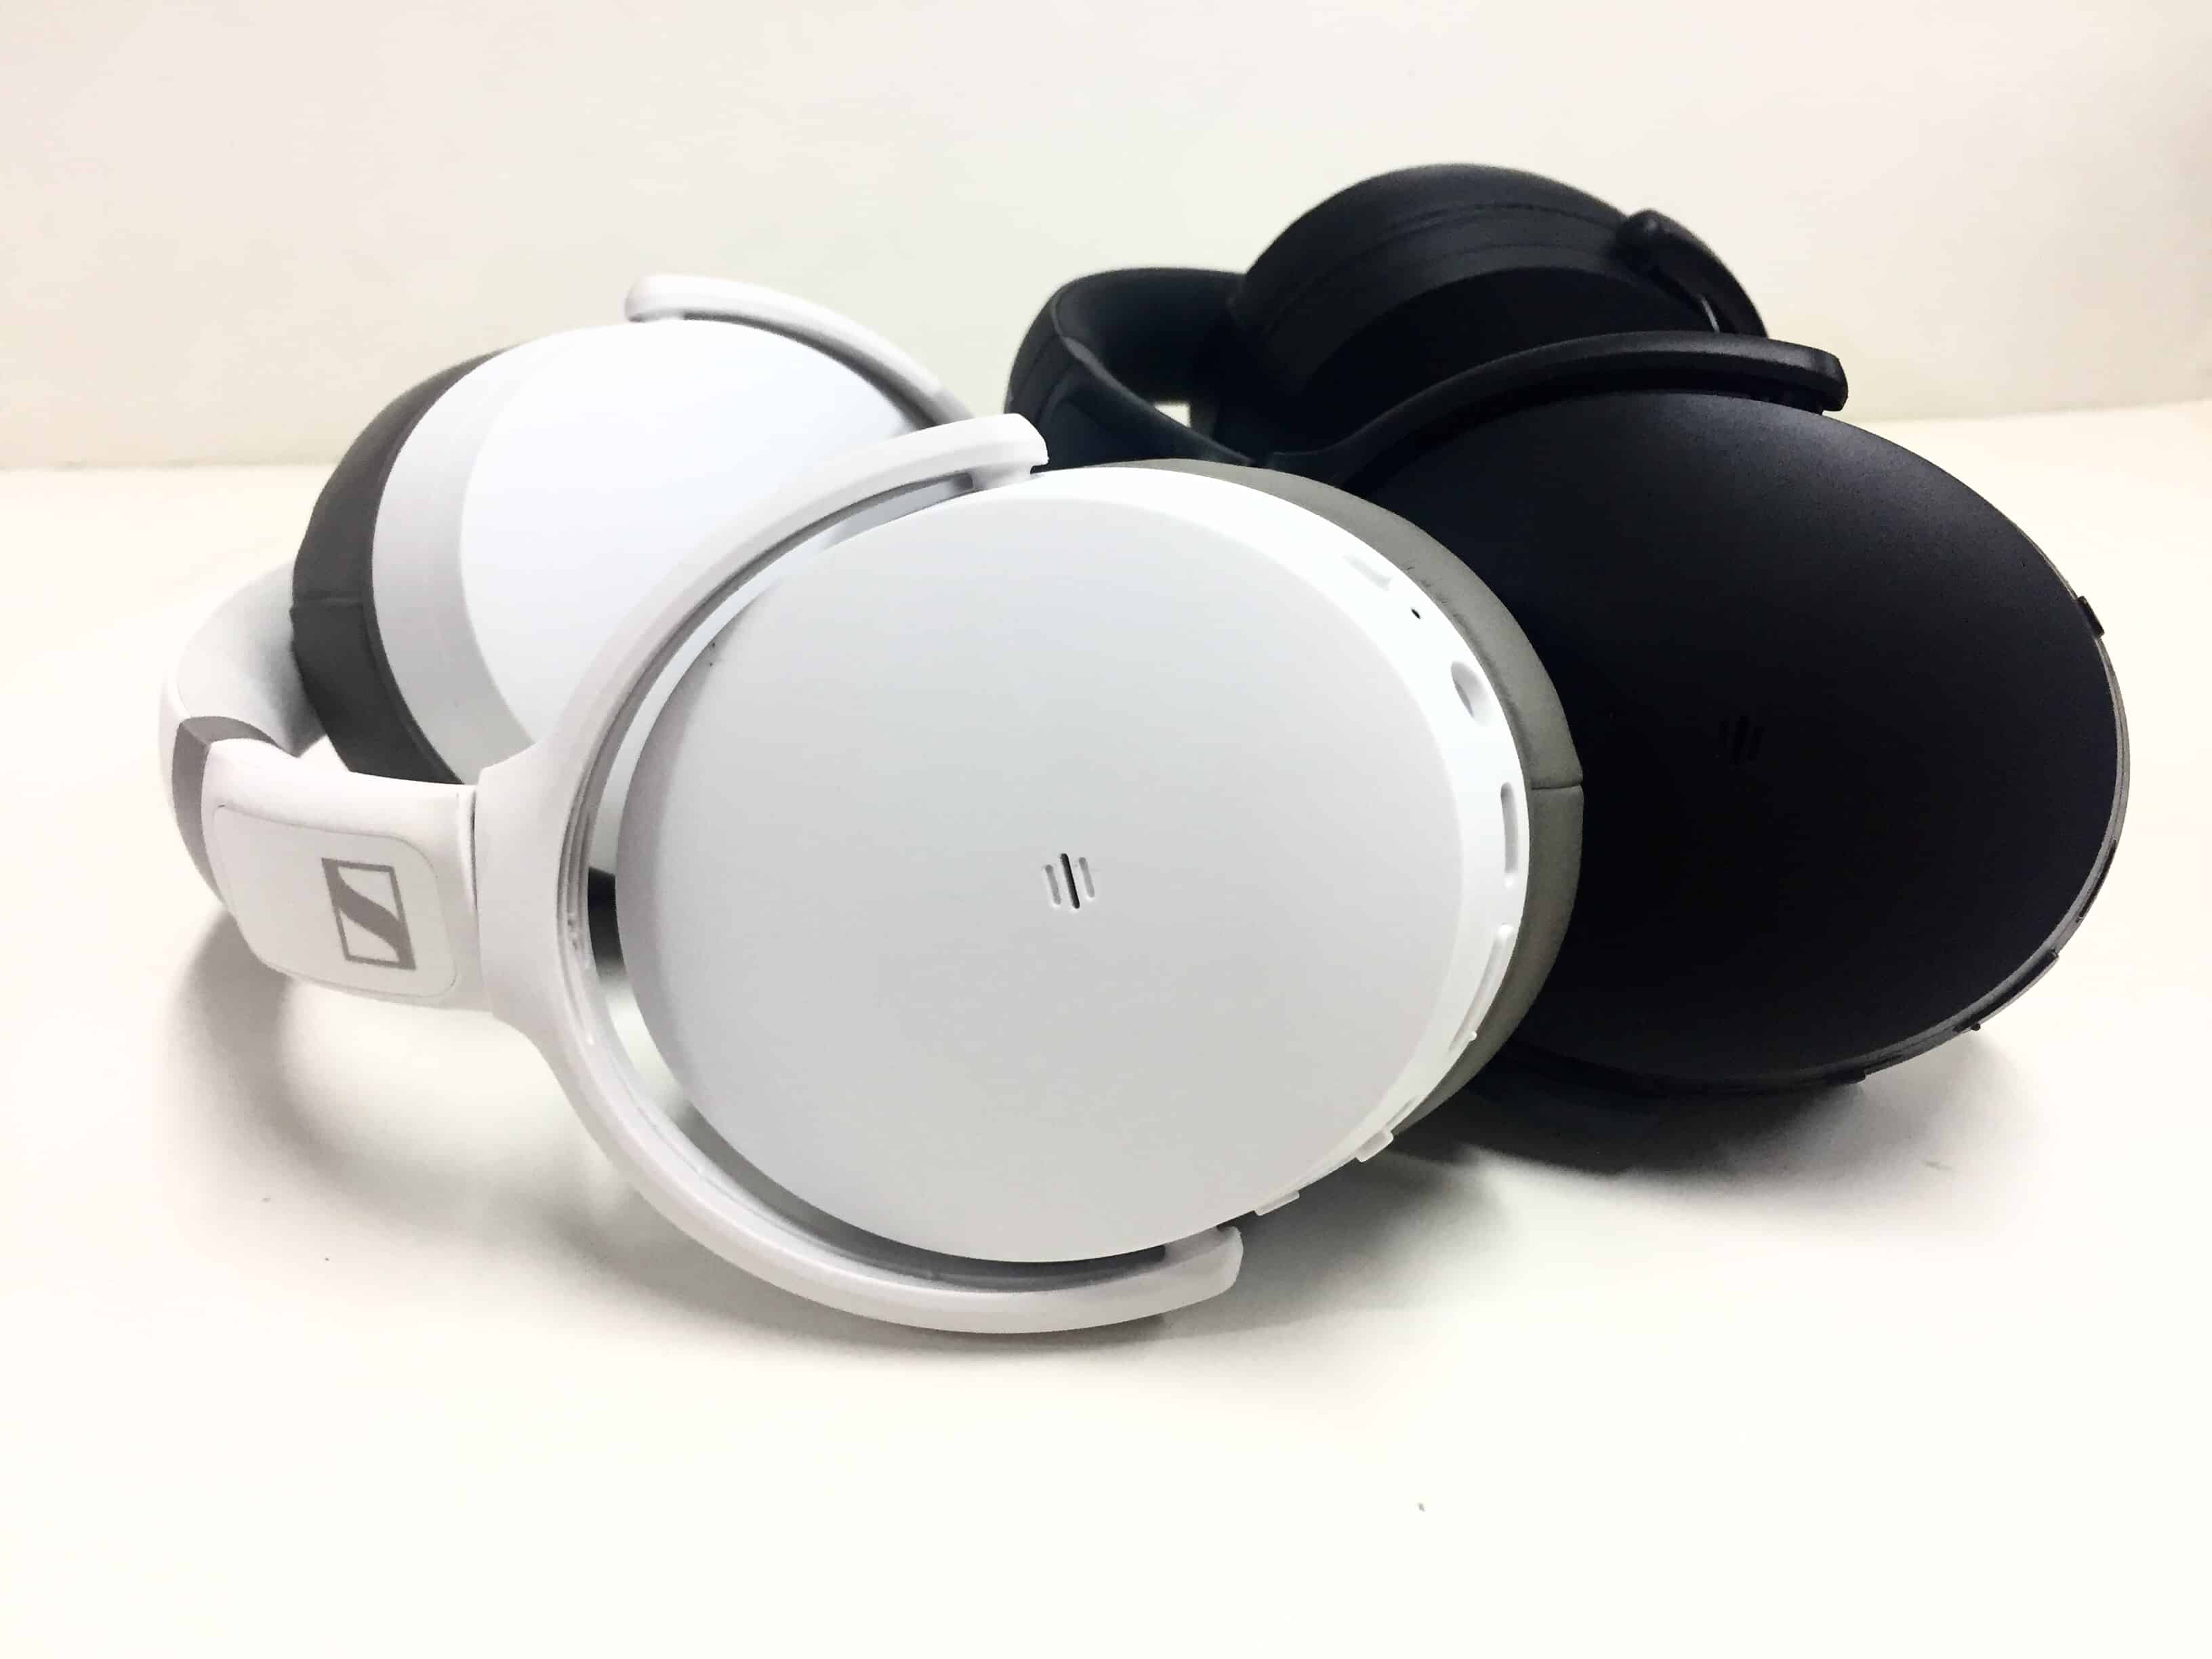 Sennheiser HD 250BT wireless headphones review: budget brilliance